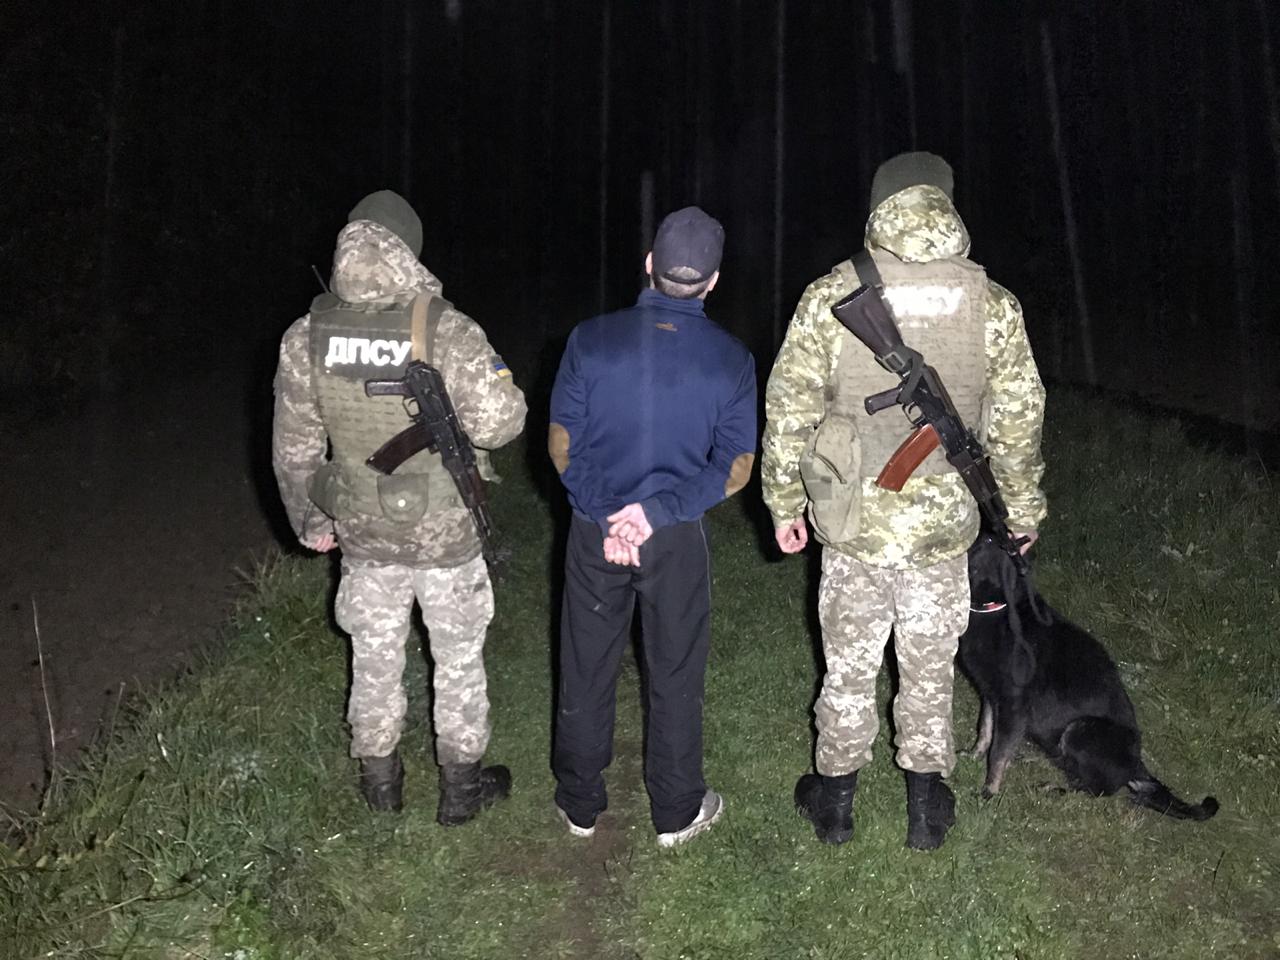 Громадянина Молдови, який намагався незаконно потрапити до Угорщини, затримали вчора ввечері військовослужбовці відділу прикордонної служби «Лужанка» Мукачівського загону.

